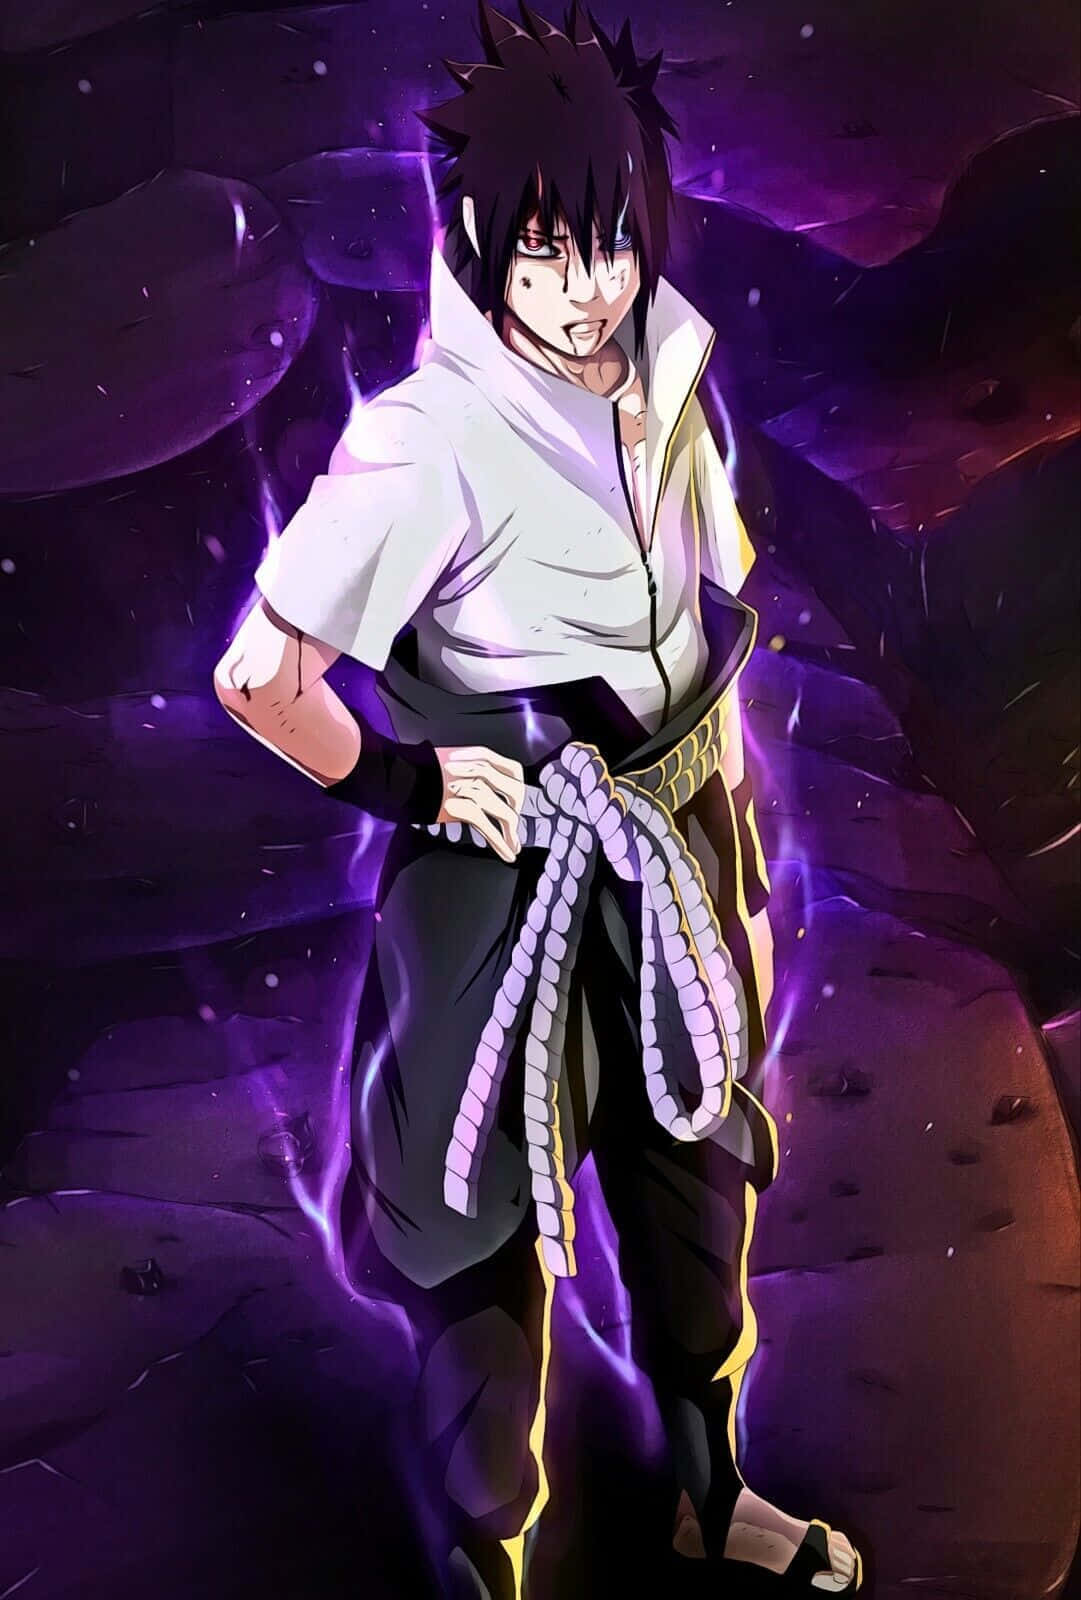 Sasuke Uchiha - en elsket ninja fra anime-serien Naruto